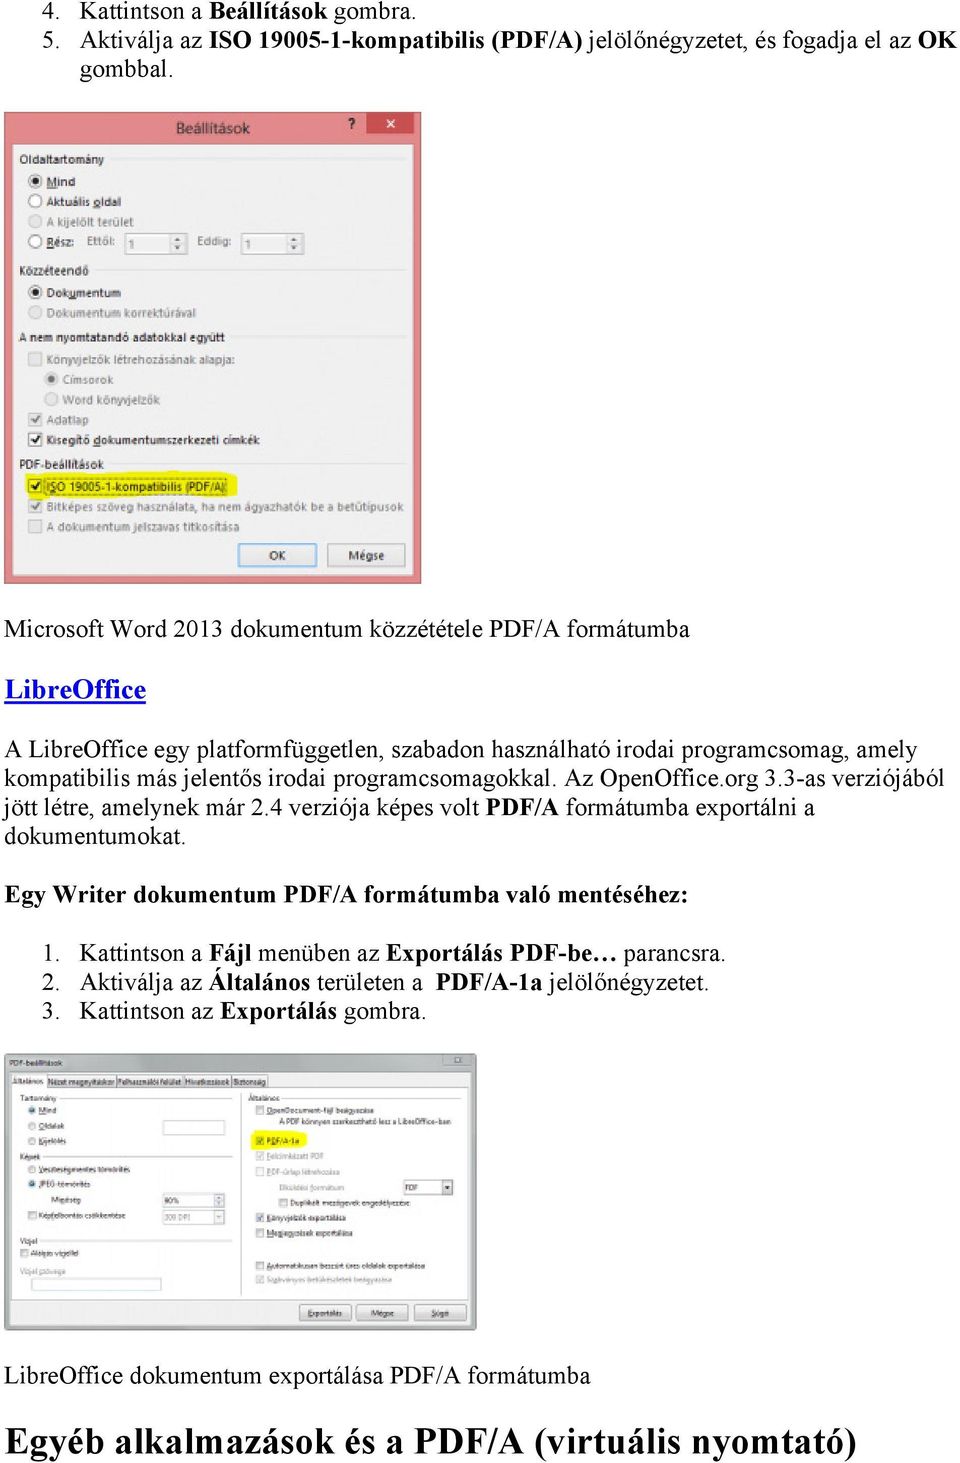 programcsomagokkal. Az OpenOffice.org 3.3-as verziójából jött létre, amelynek már 2.4 verziója képes volt PDF/A formátumba exportálni a dokumentumokat.